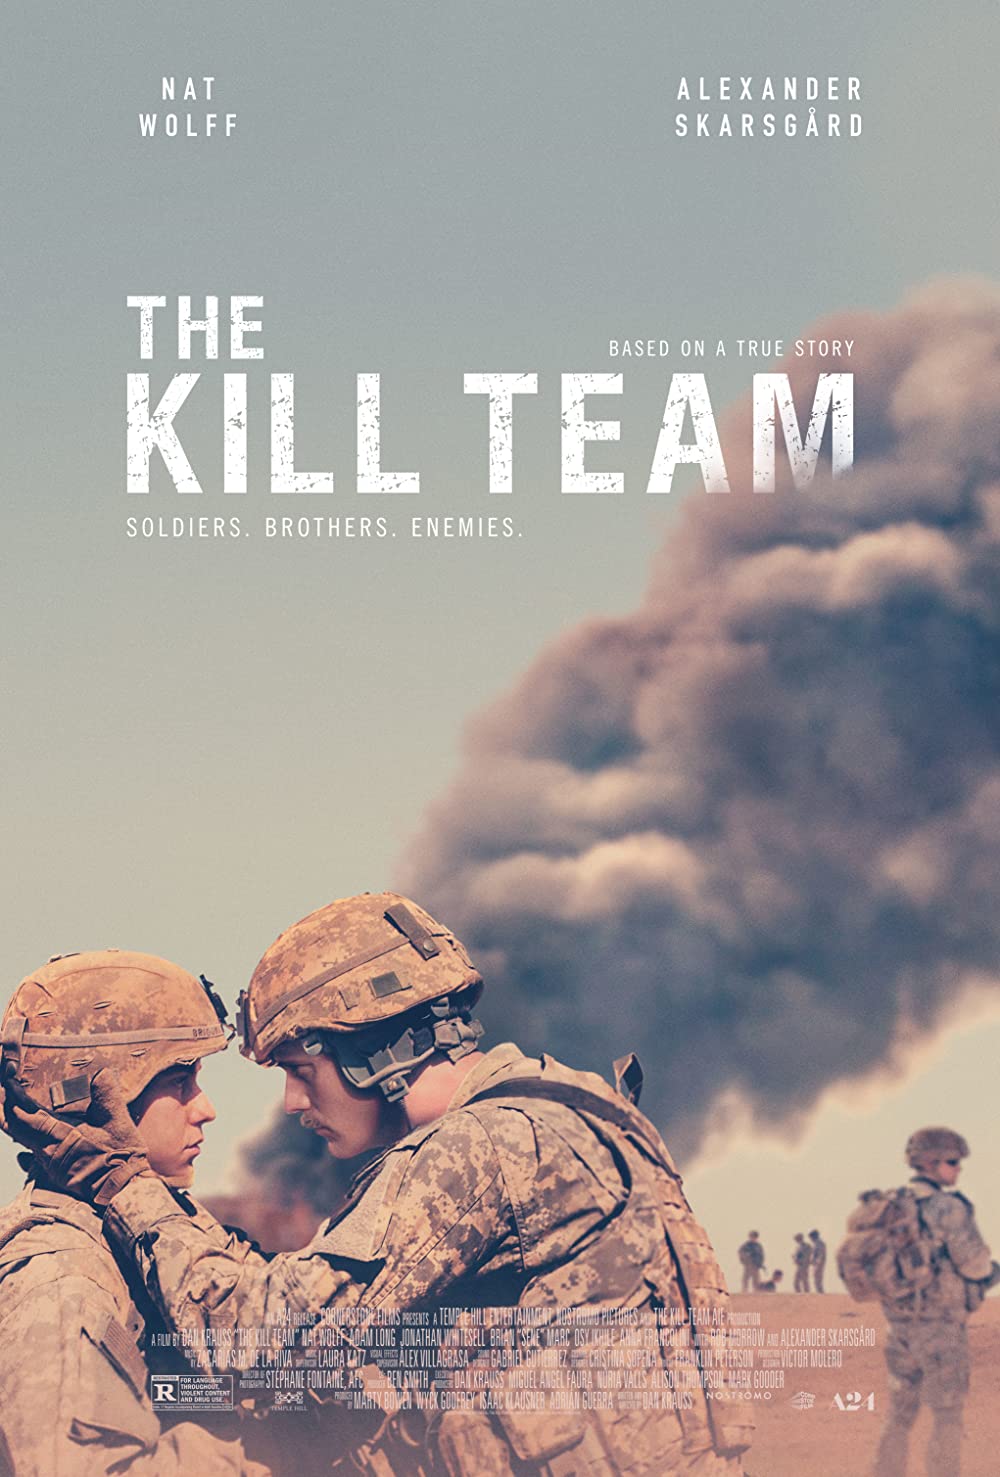 11 Film terbaik Netflix kisahkan perang, penuh aksi heroik